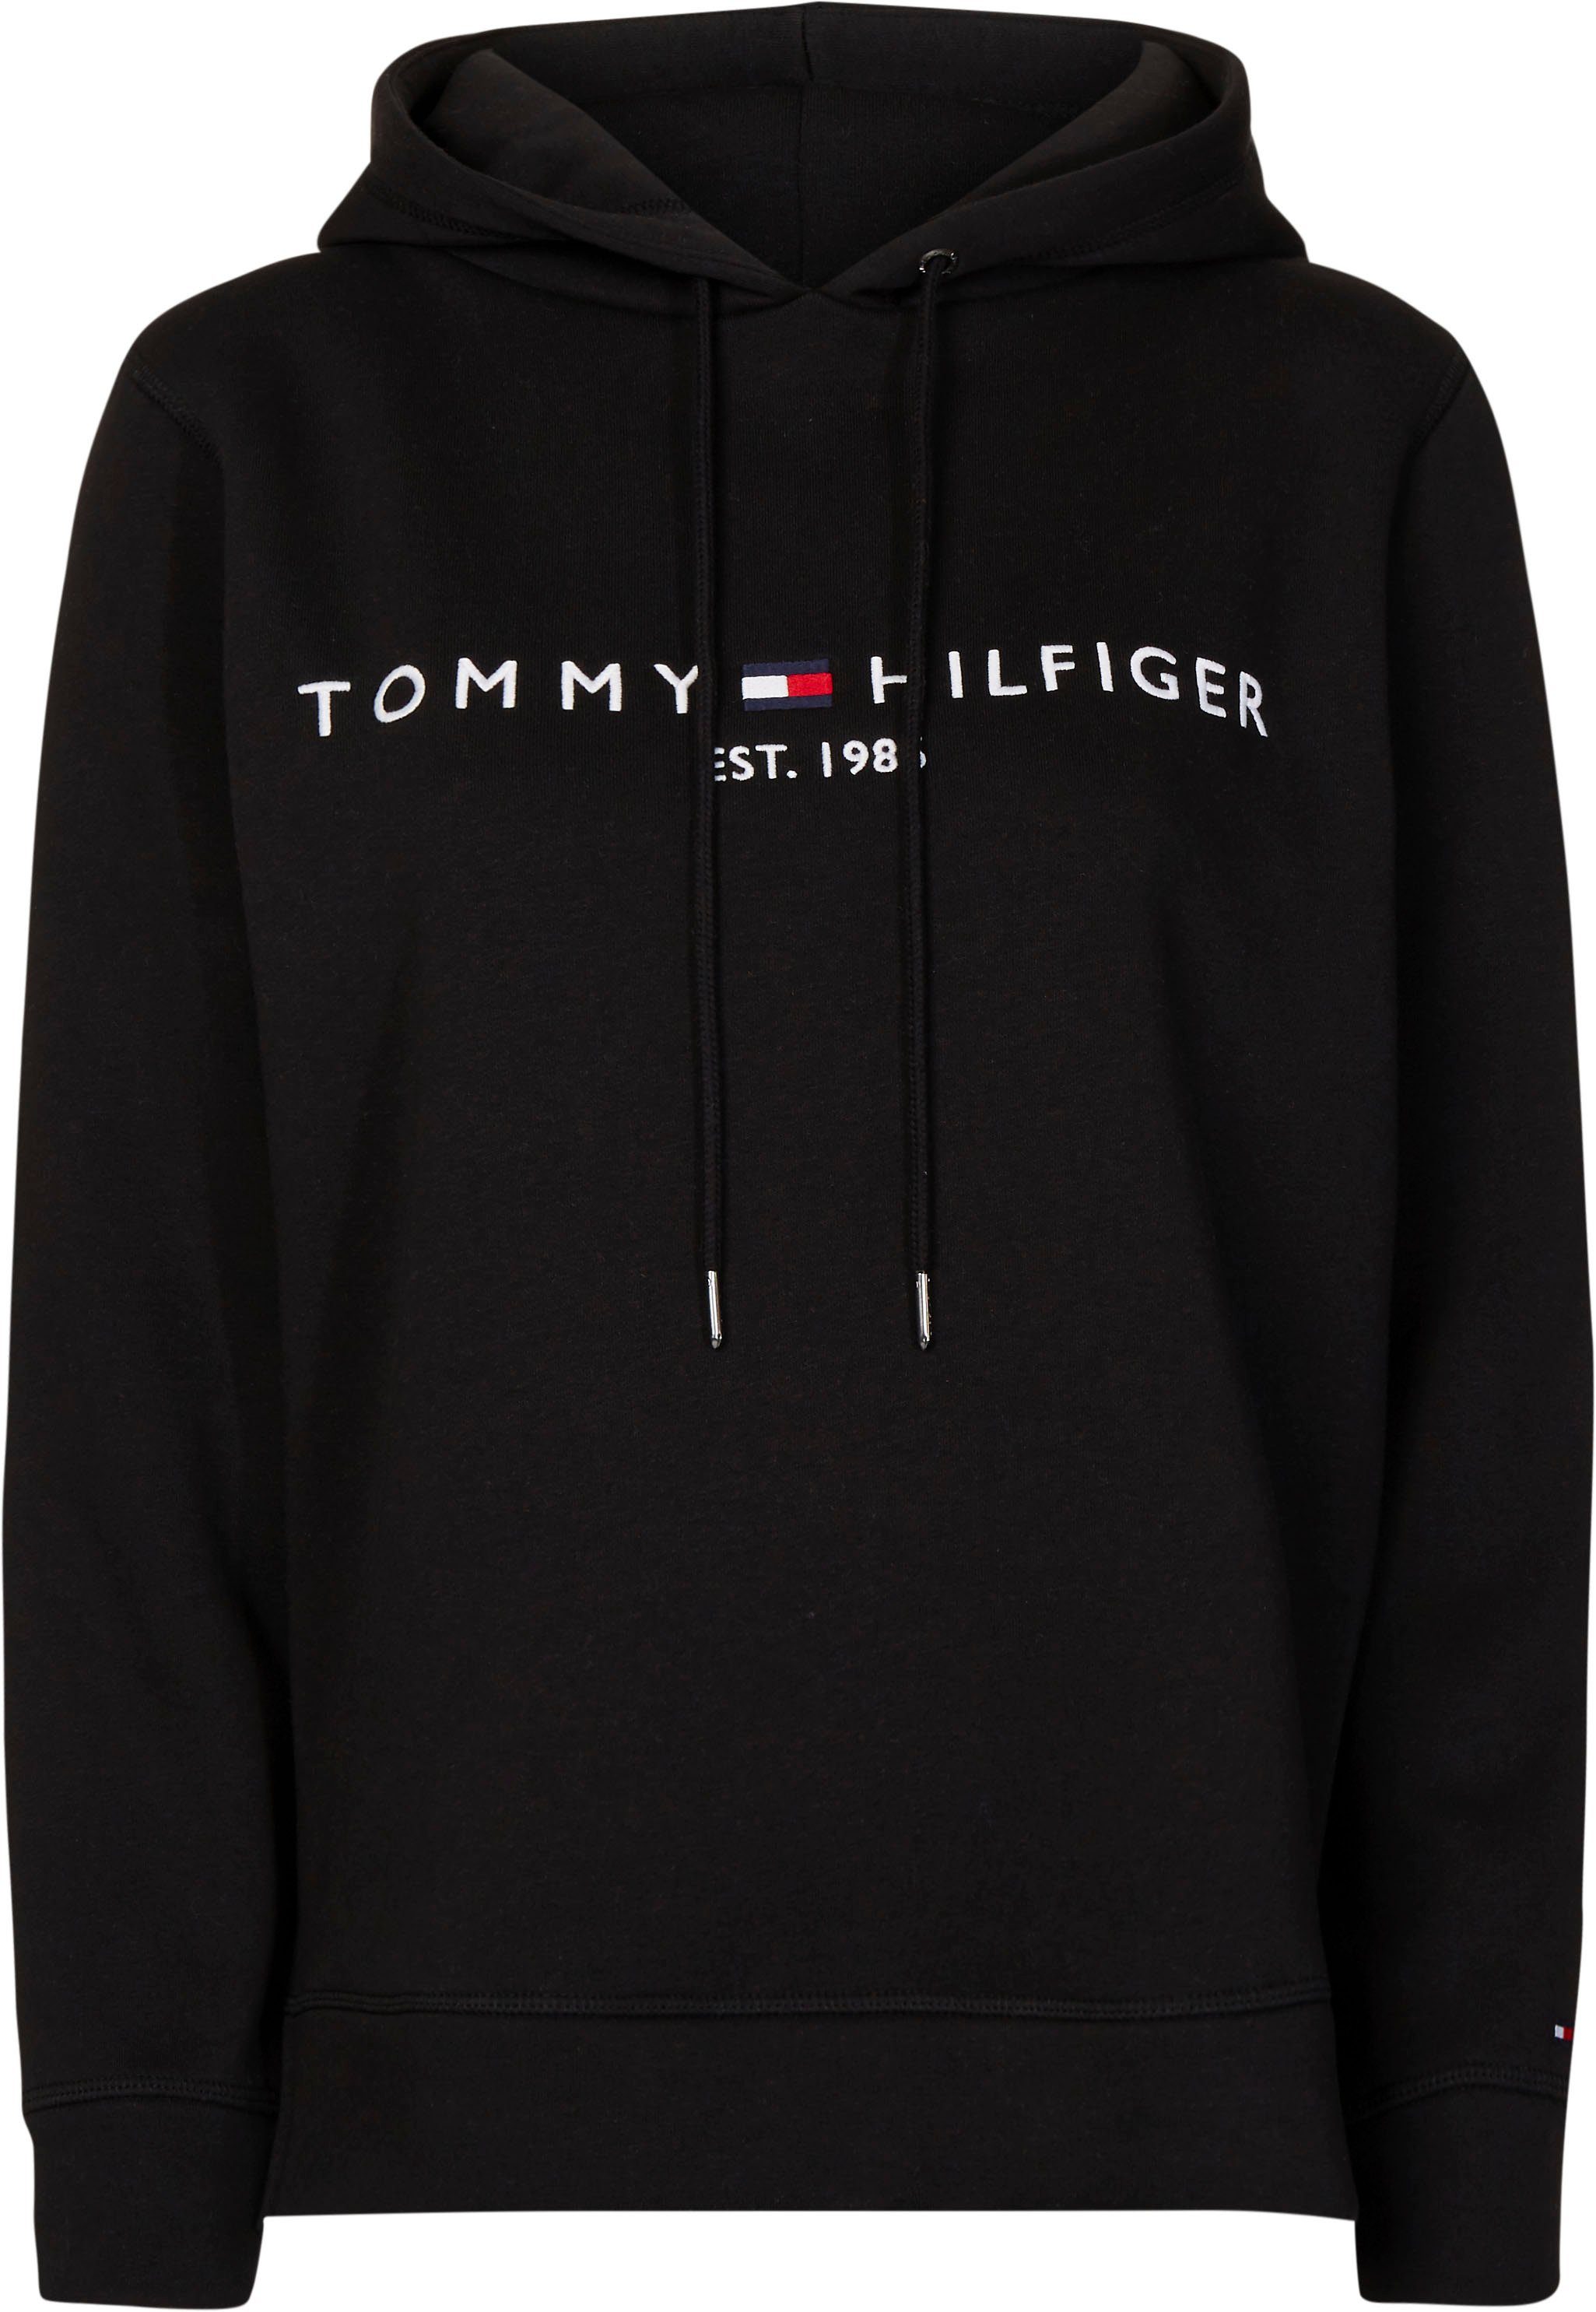 Schwarze Tommy Hilfiger Pullover für Damen kaufen | OTTO